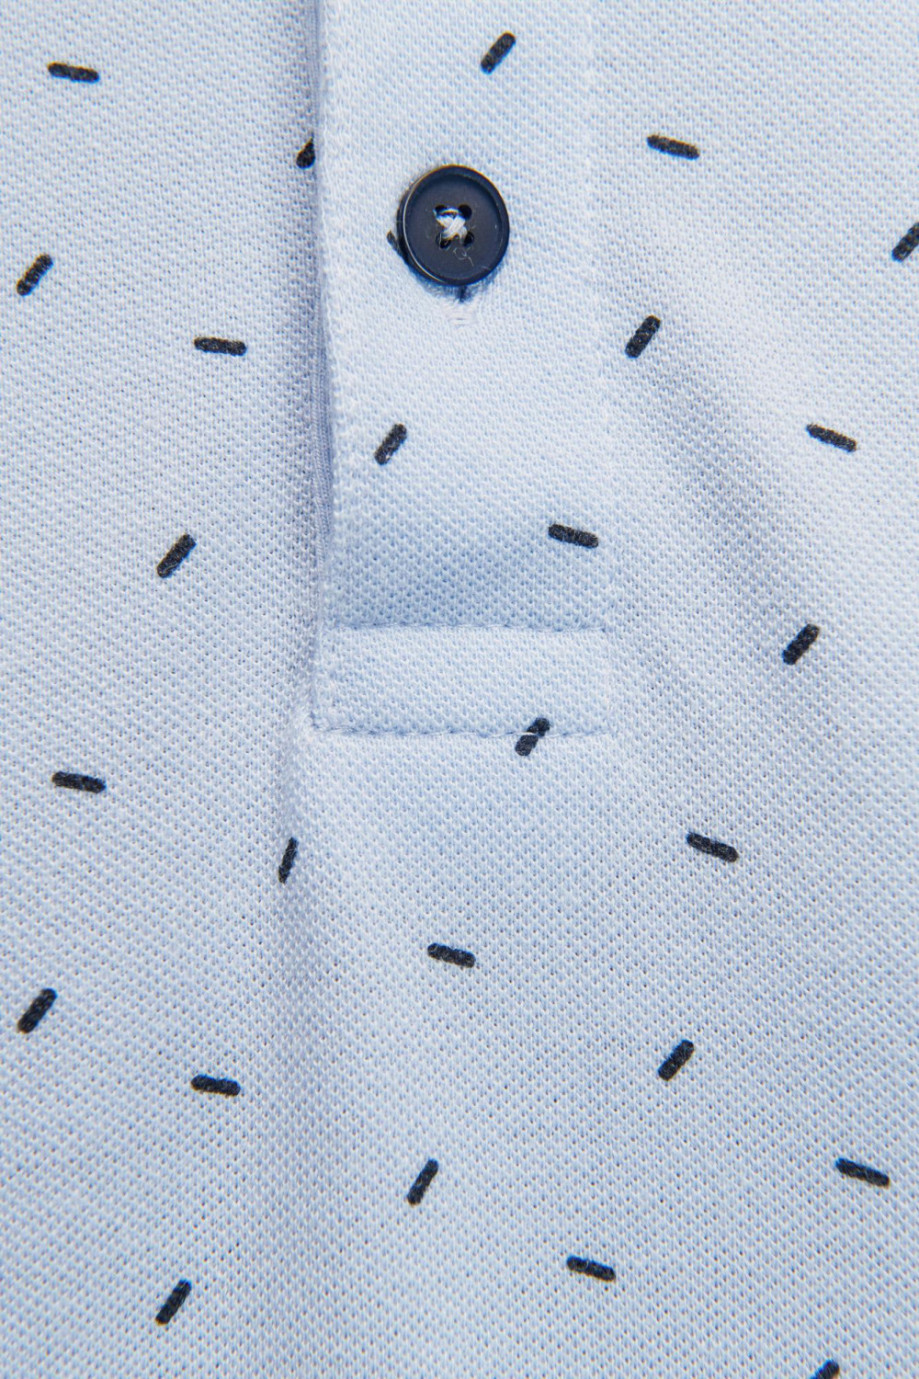 Camiseta Polo estampada con cuello y puños tejidos.